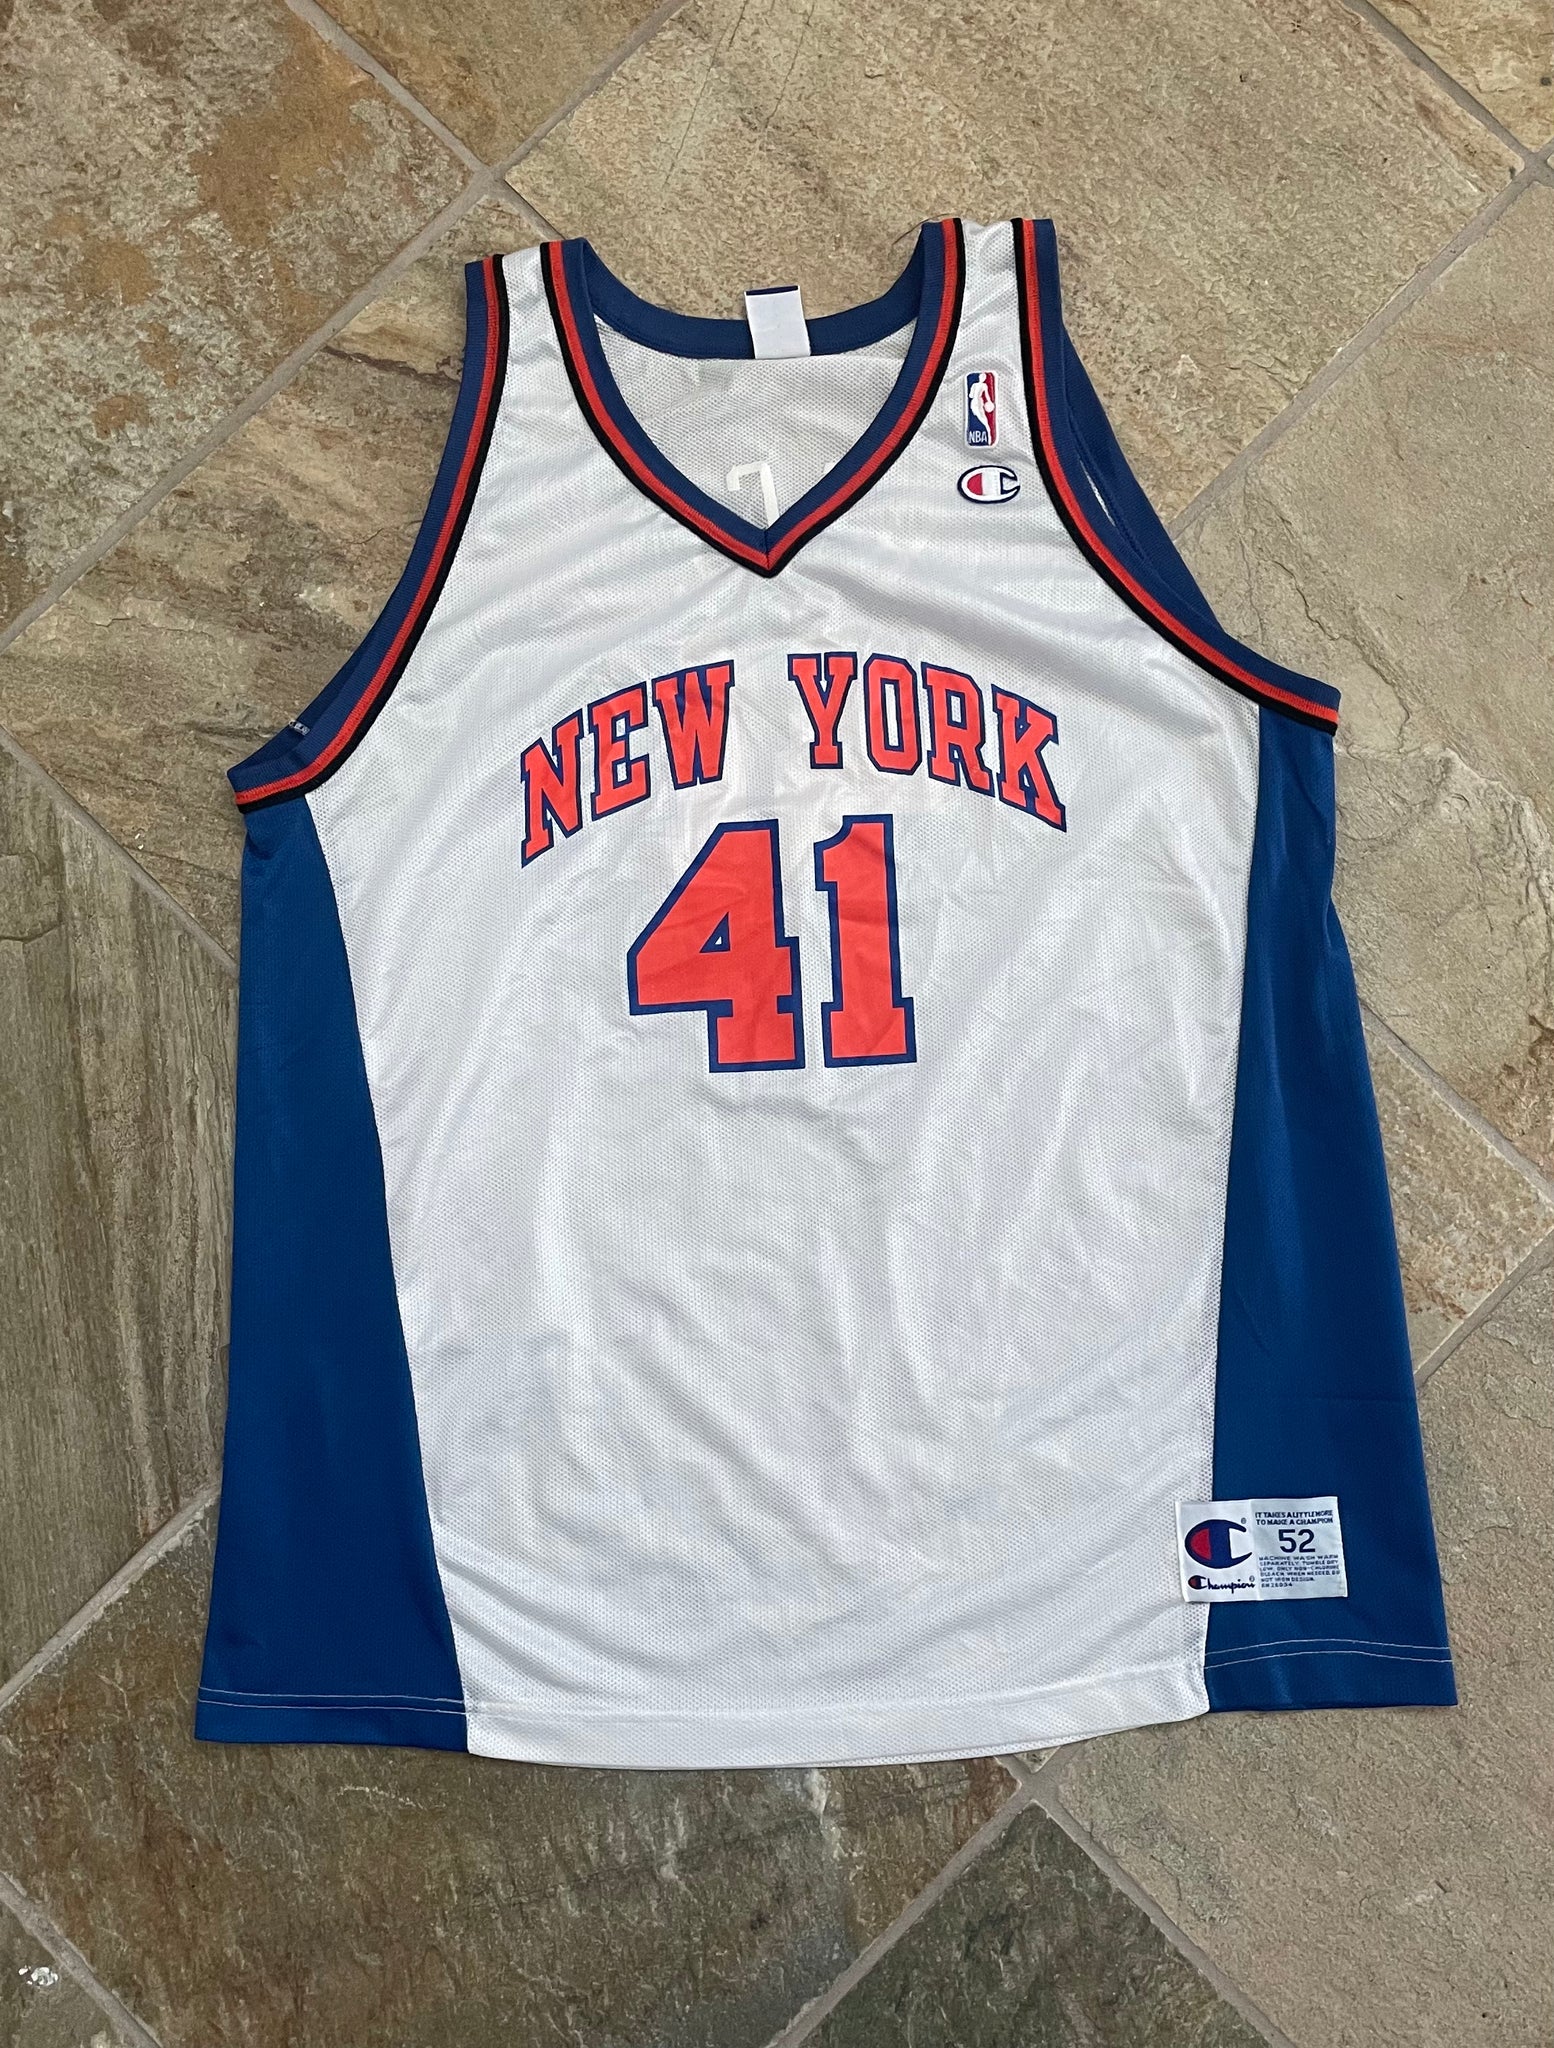 90s Knicks Jersey 